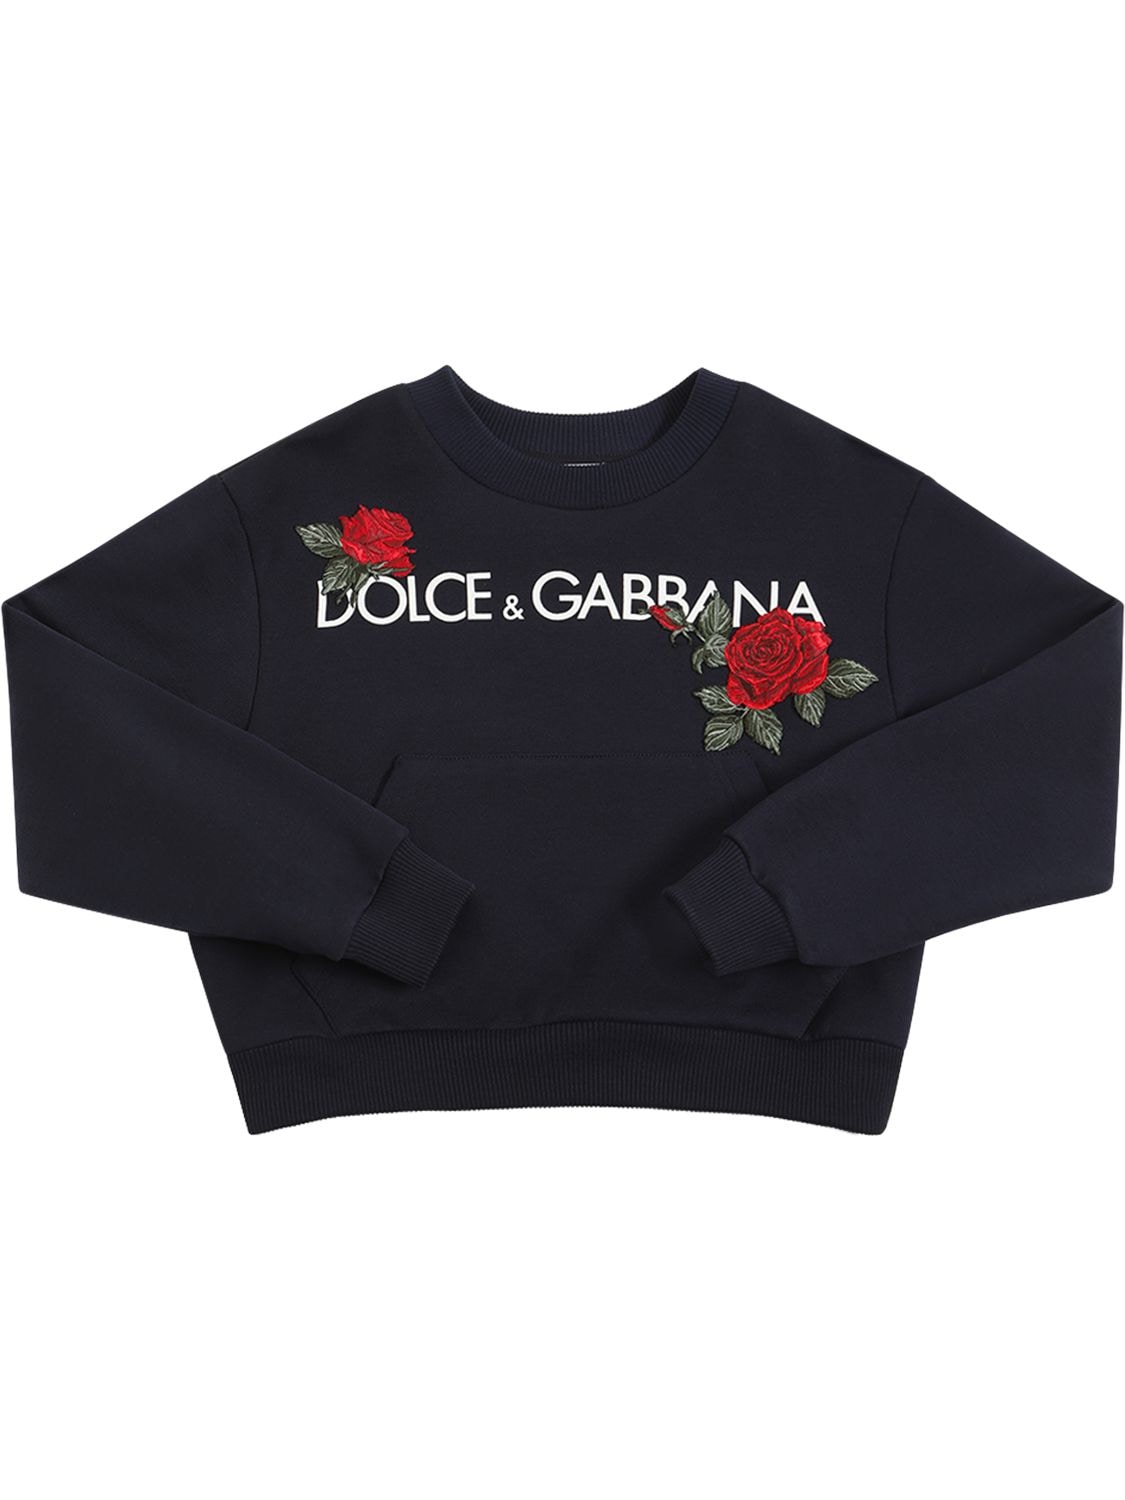 Dolce & Gabbana Kids' Logo Print Cotton Sweatshirt In Navy